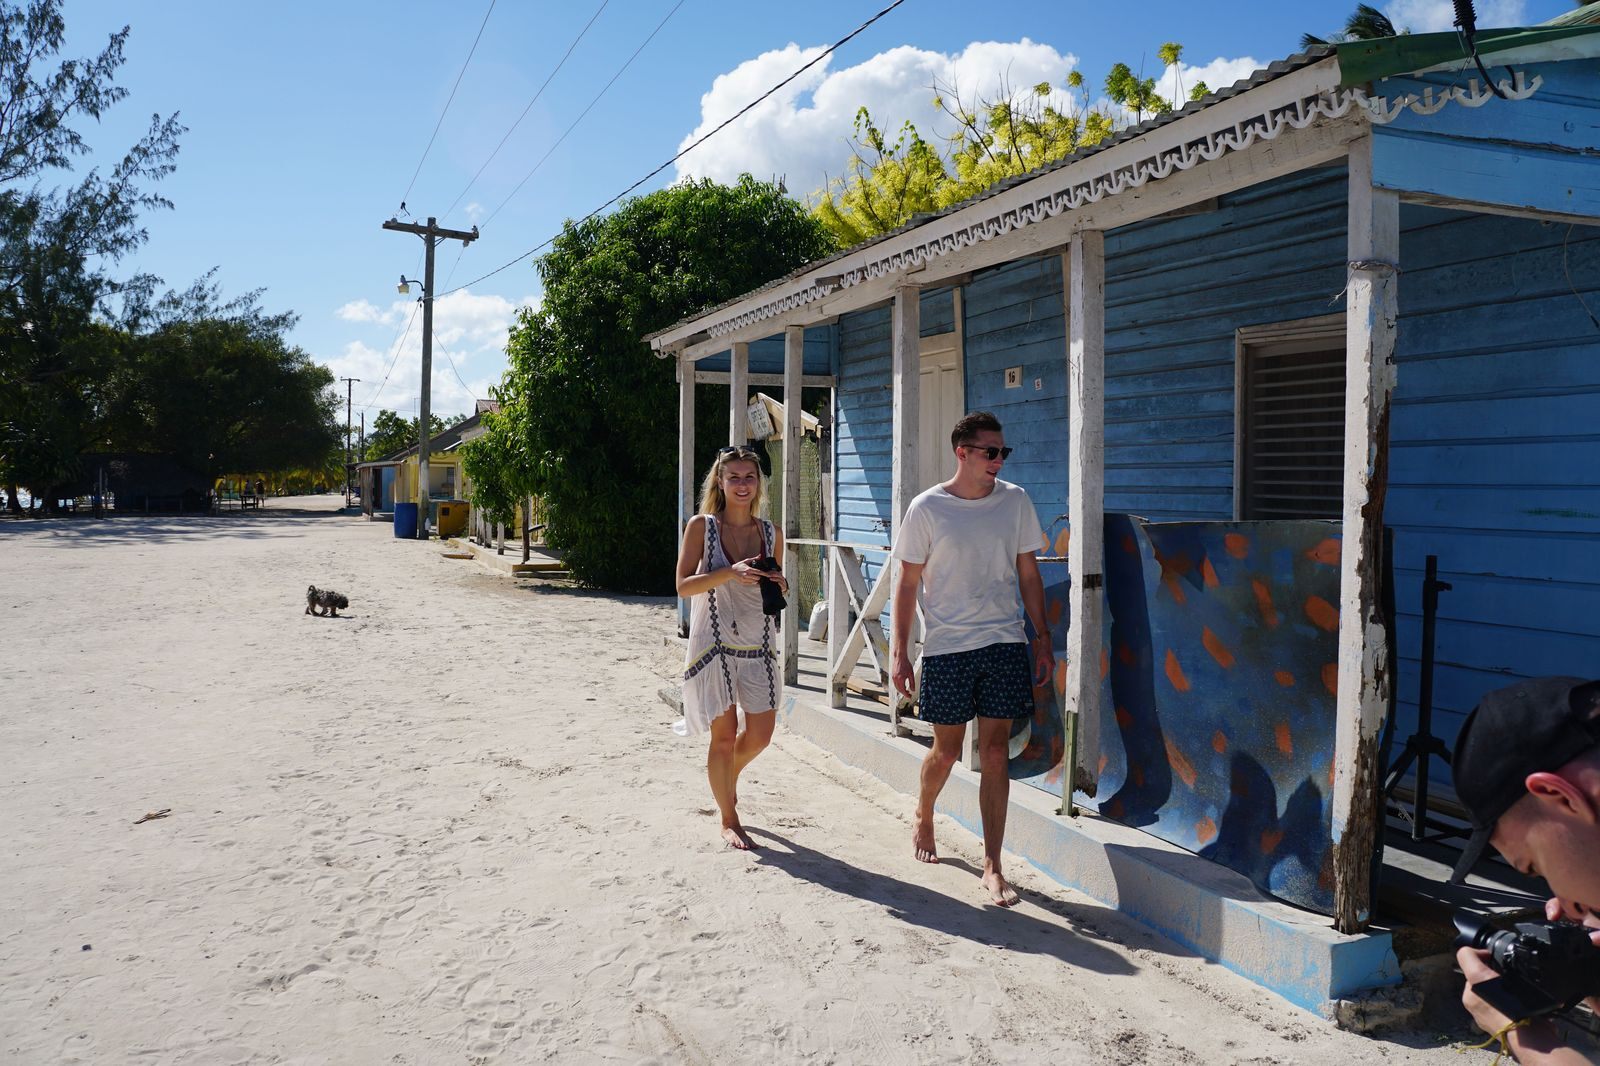 Find Us Lost percorrem a República Dominicana para lhe recomendar as melhores excursões para suas férias